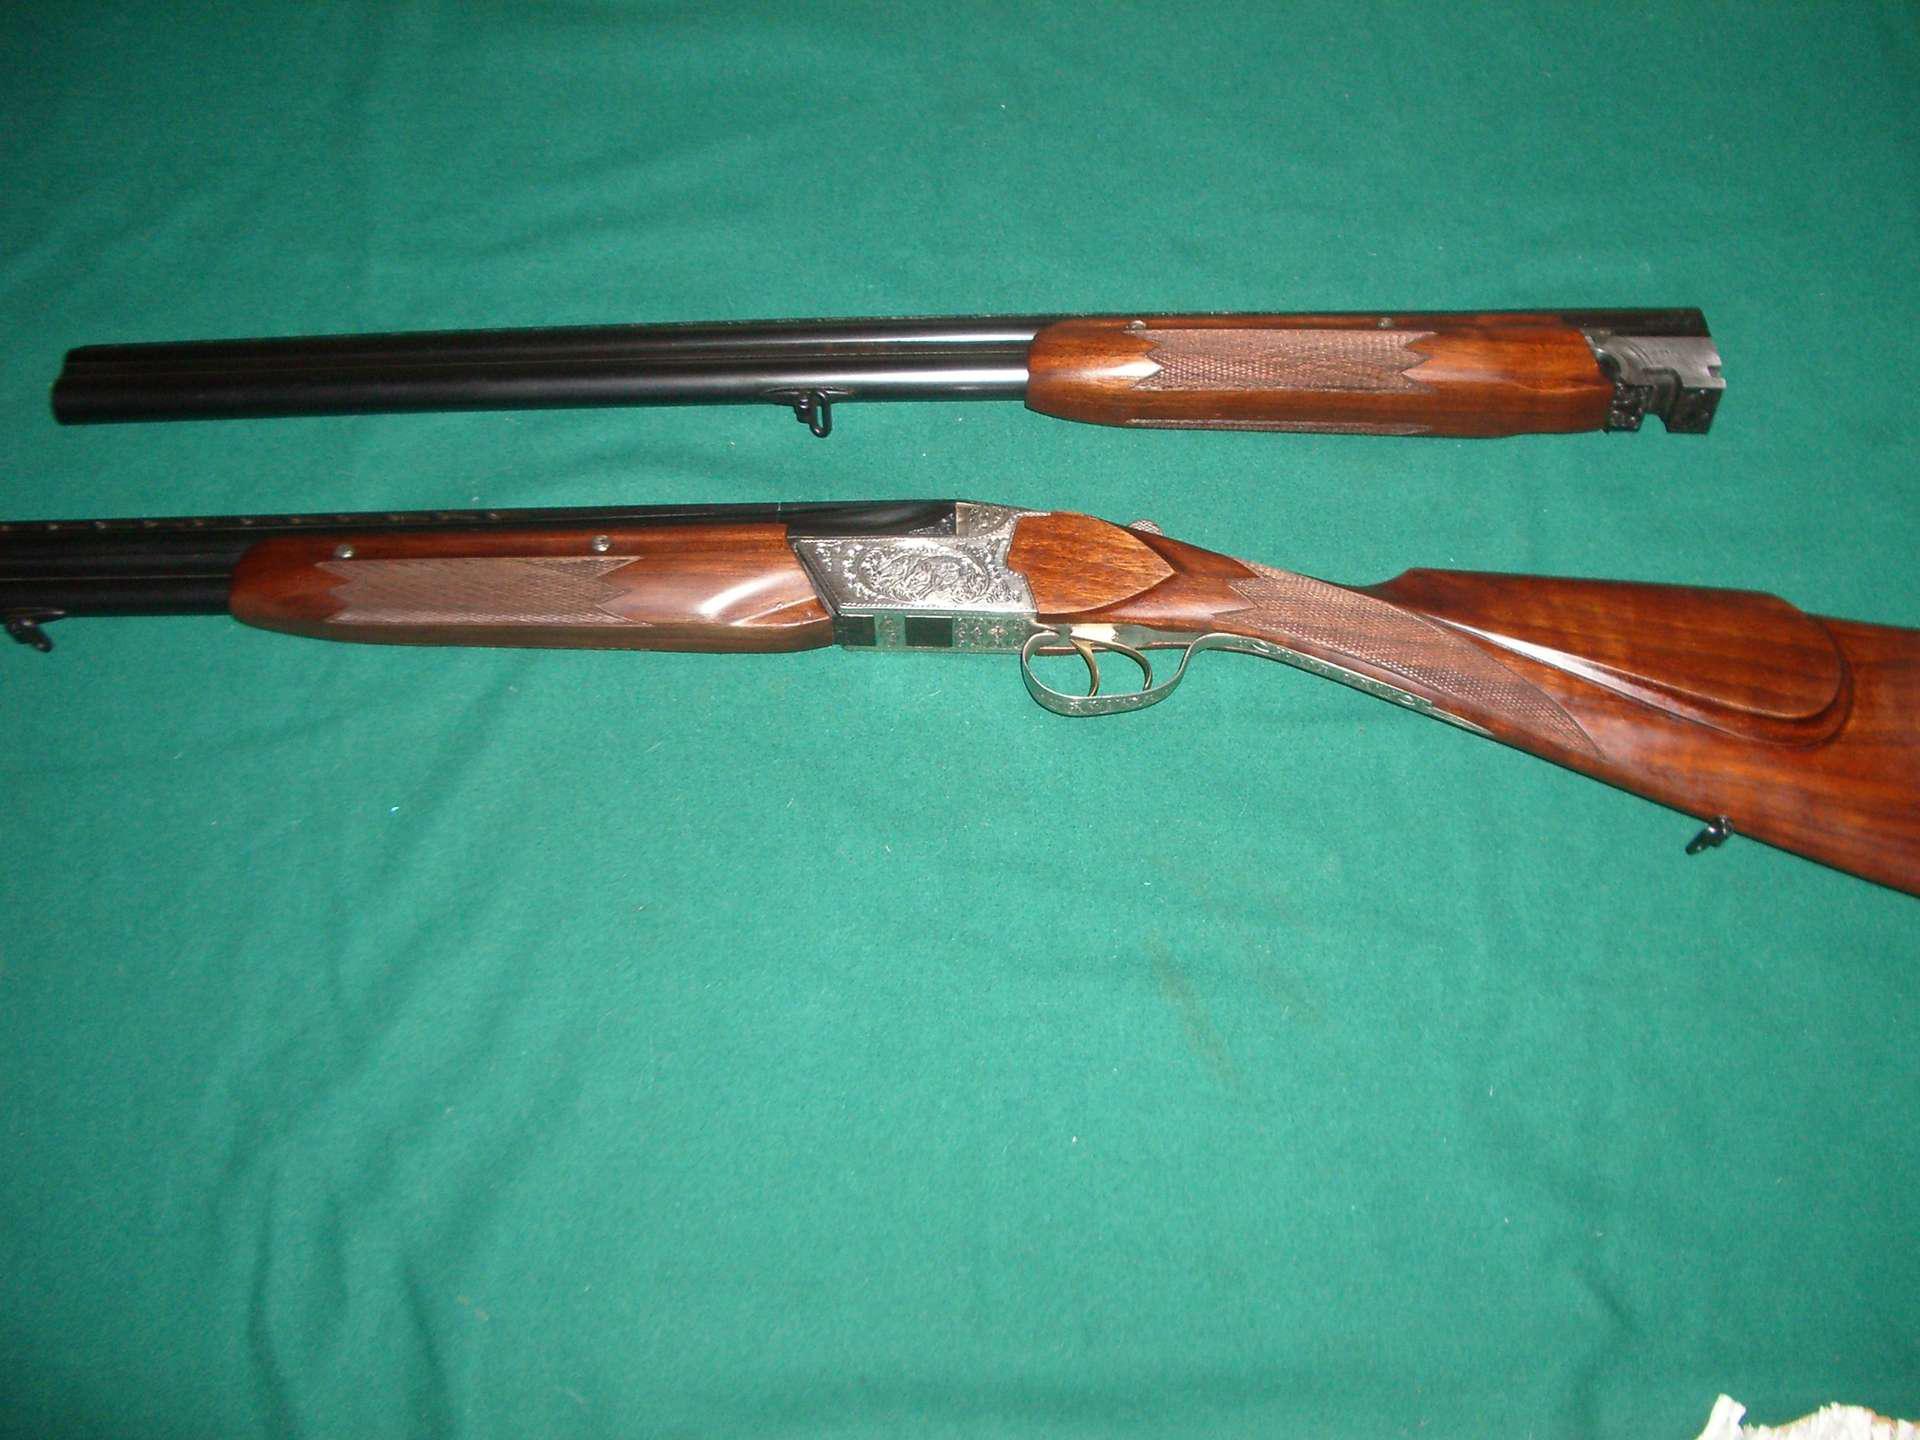 Б у ружья для охоты купить. ТОЗ-34 С оптикой. ТОЗ 34 штучное с двумя парами стволов. Охотничьи ружья б у. Охотничье ружье √164707 Rottweil 600.